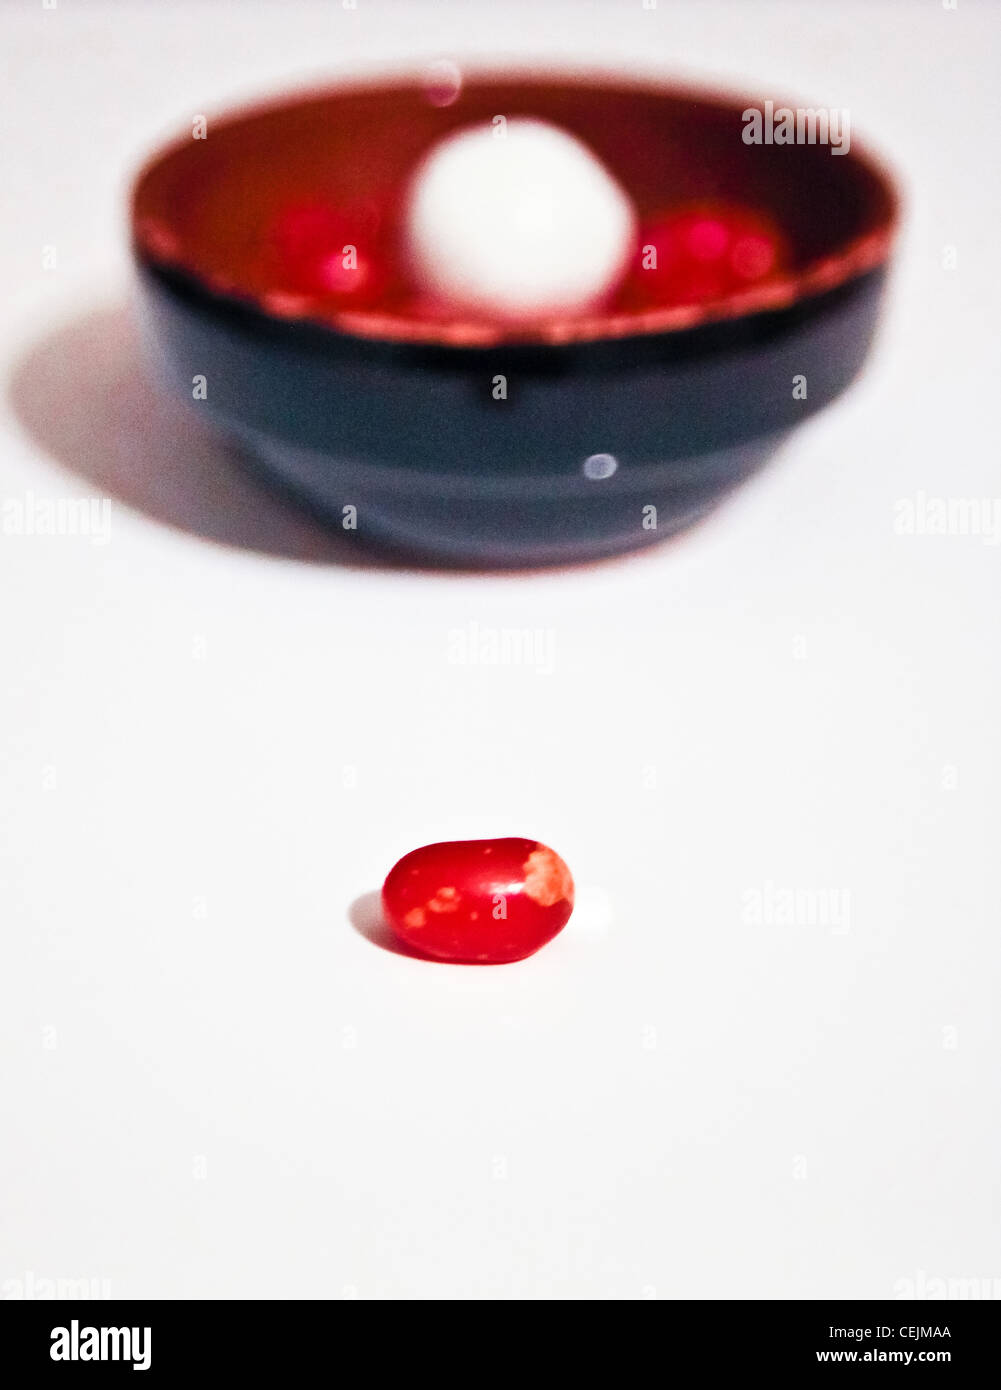 Rosso caramella da soli di fronte a un vaso di terracotta piena di colorati e alla cannella caramelle contro white Foto Stock